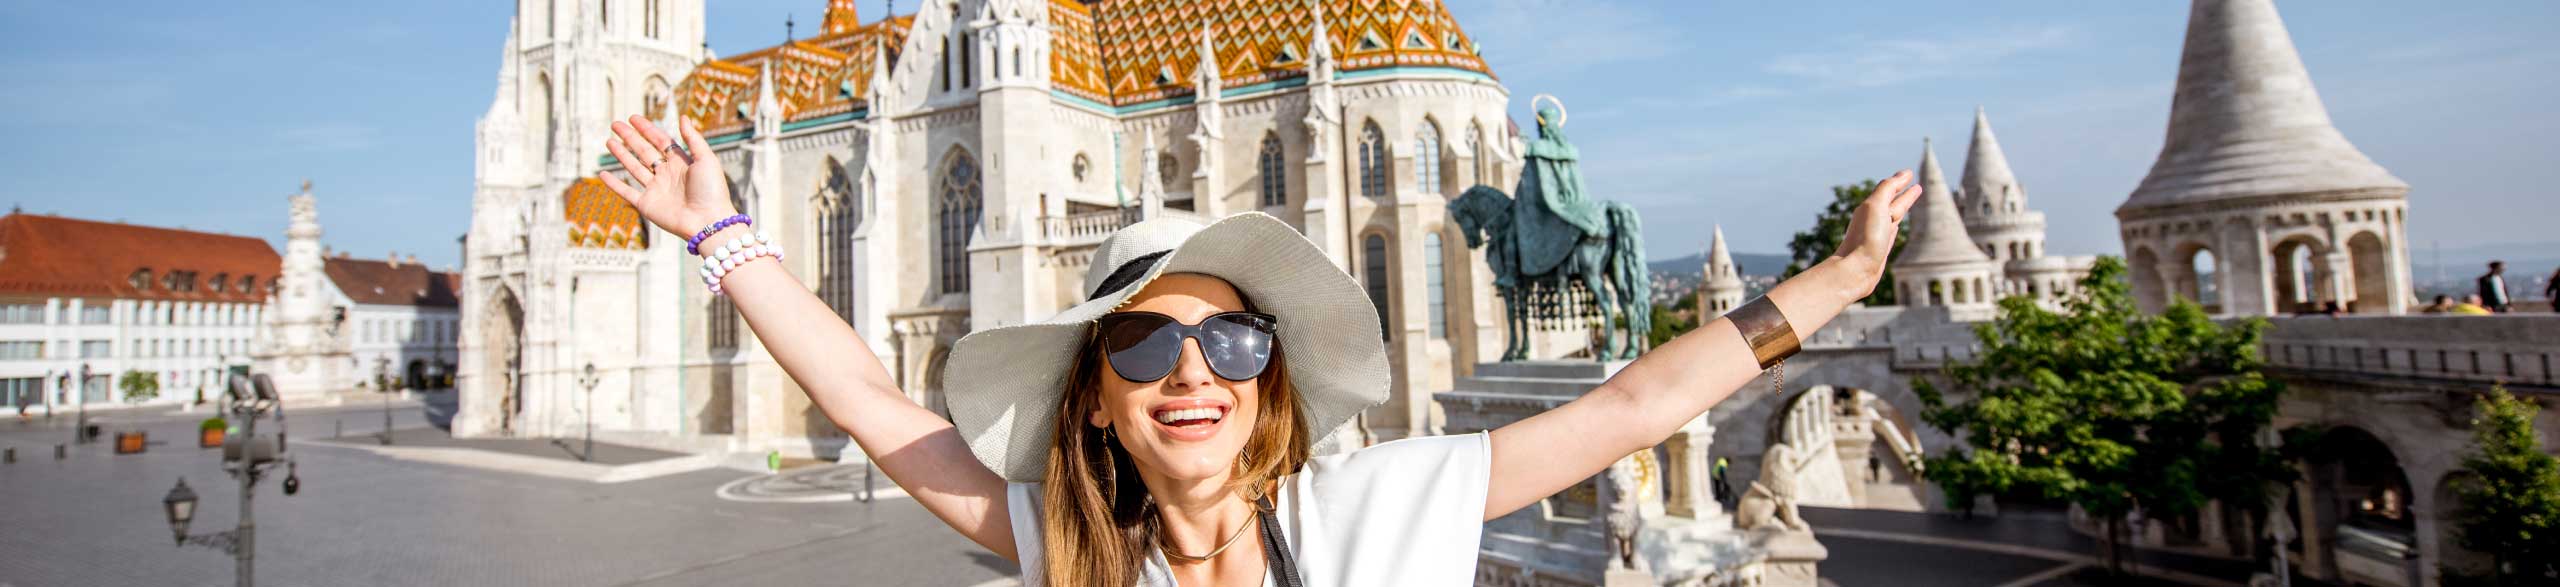 Escape tourist groups with unique tour experiences in Budapest